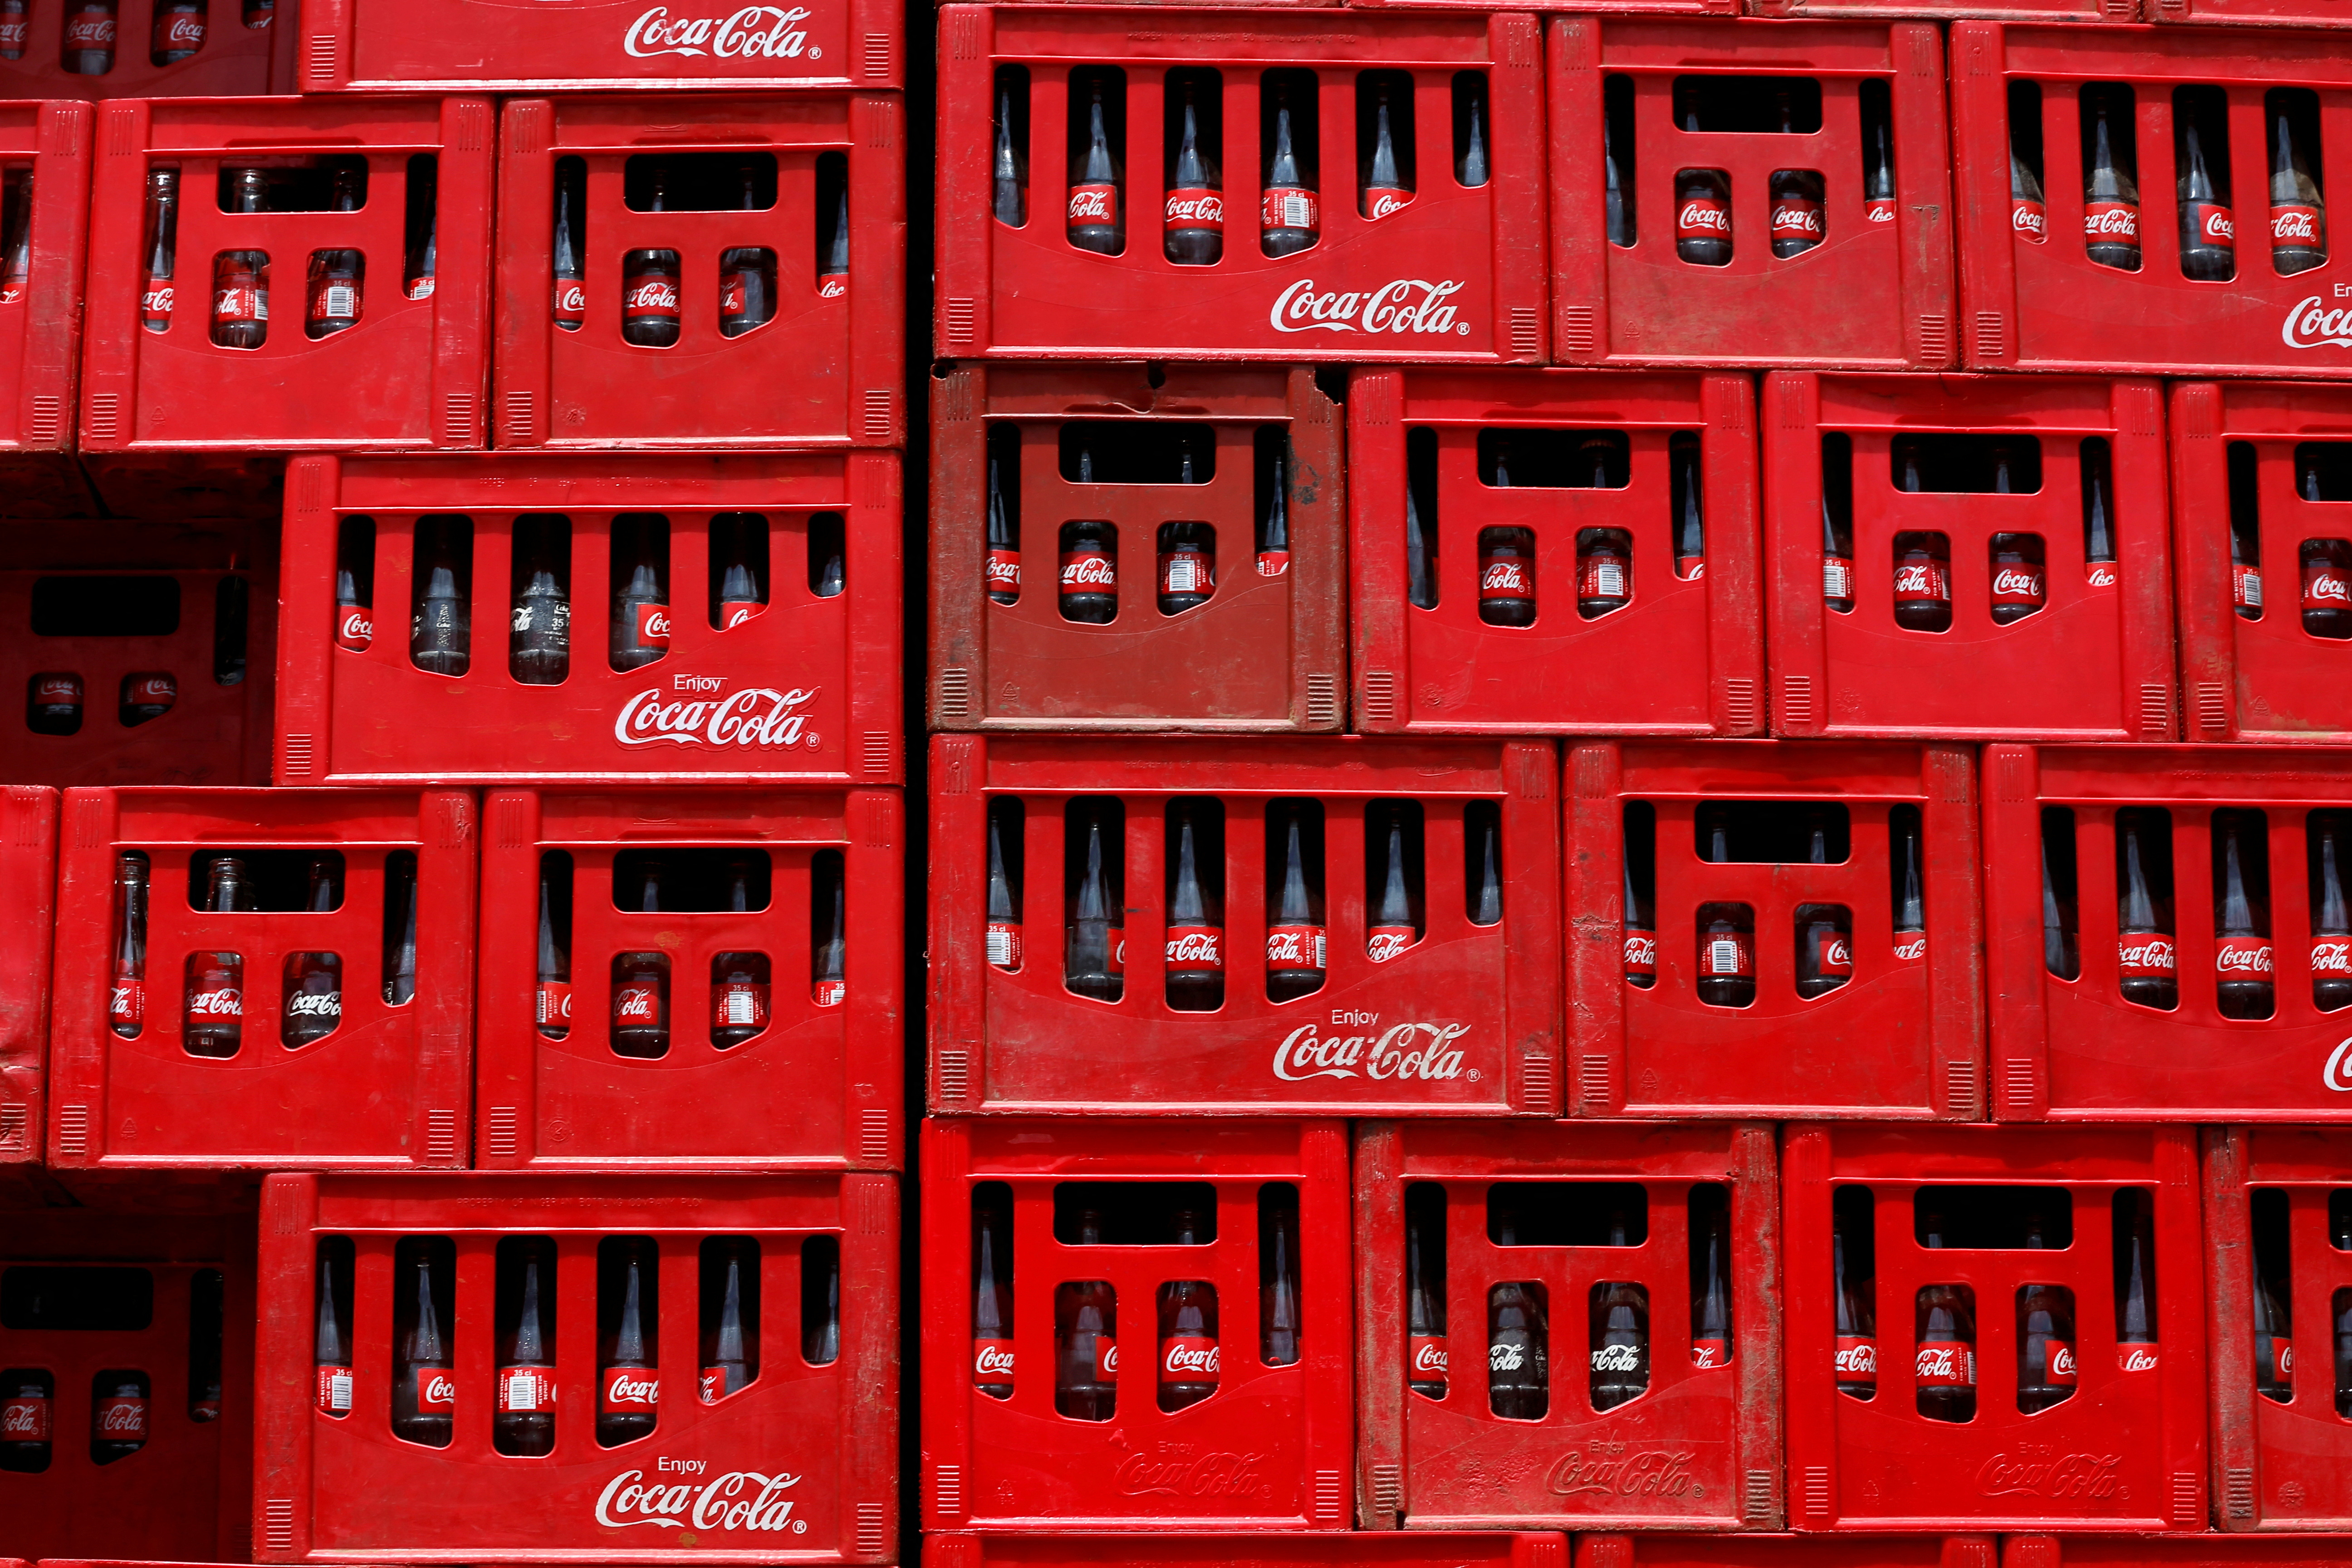 Coca-Cola crates are pictured in Abuja